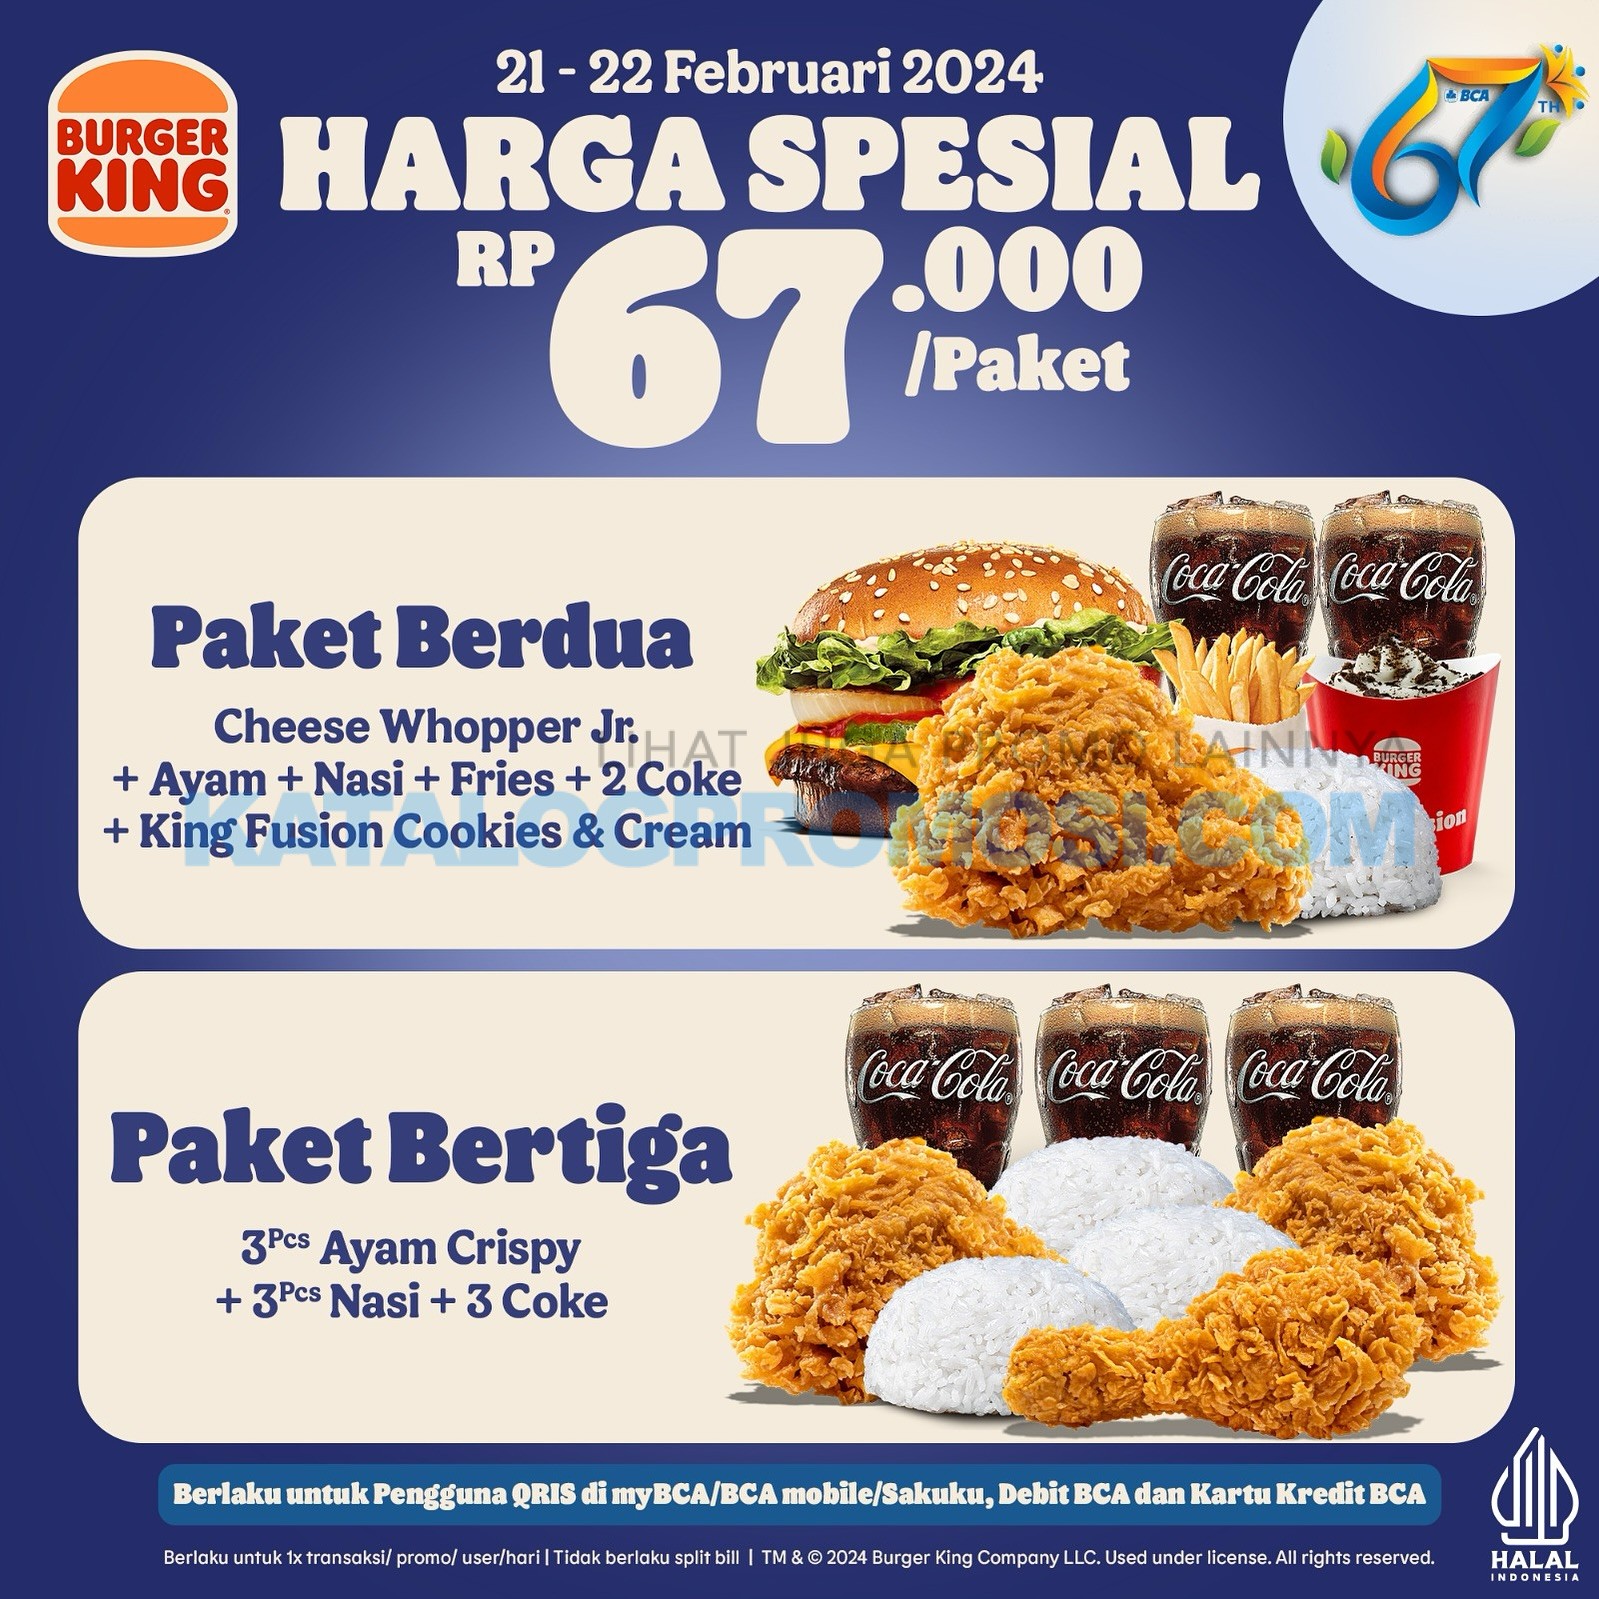 Promo BURGER KING HUT BCA 67 - Harga Spesial Rp67 Ribu Paket Meal BERDUA / BERTIGA berlaku mulai tanggal 21-22 FEBRUARI 2024